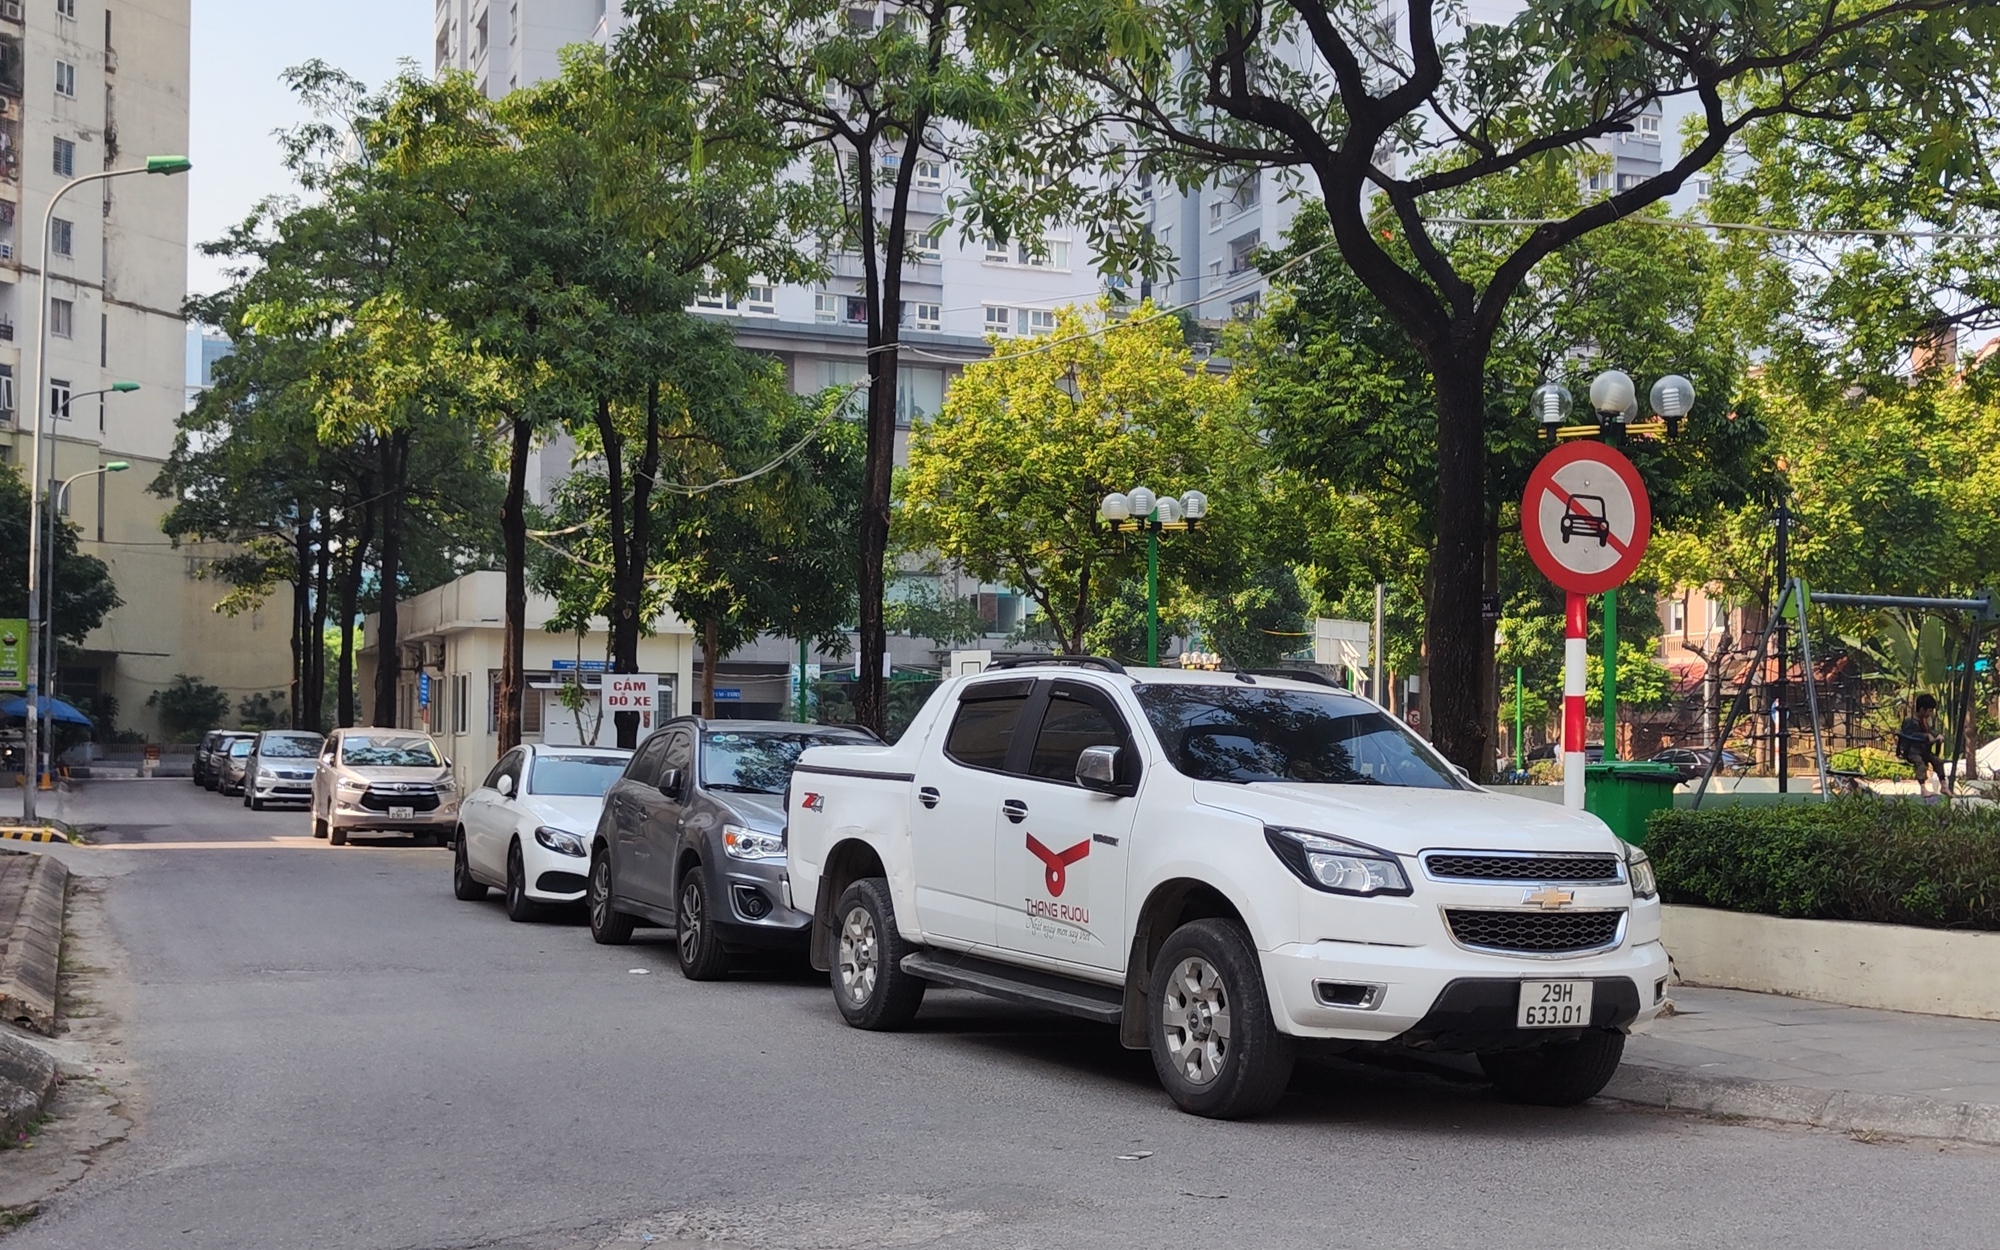 Cầu Giấy: Nhiều ô tô dừng, đỗ bừa bãi trong khu đô thị Yên Hoà